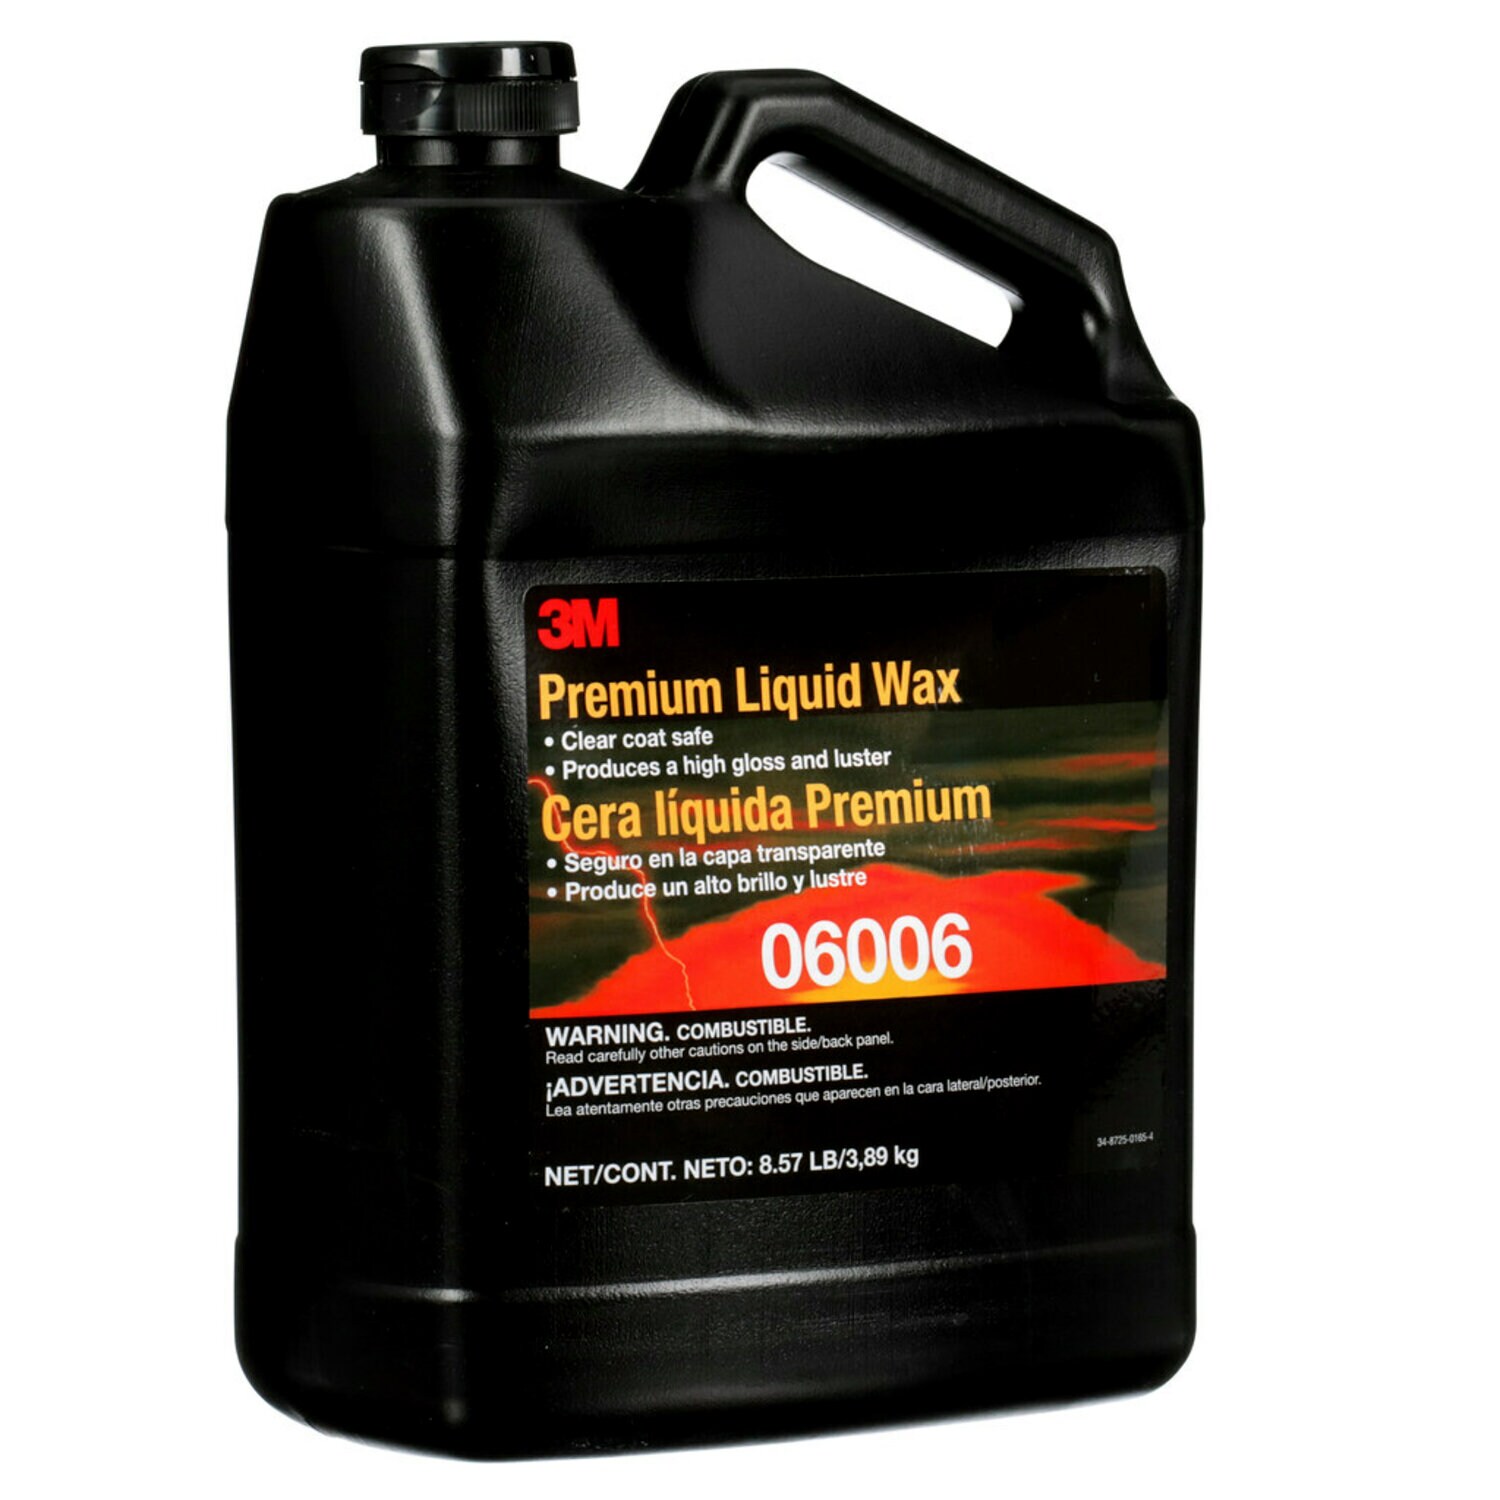 7100020867 - 3M Premium Liquid Wax, 06006, 1 gal, 4 per case